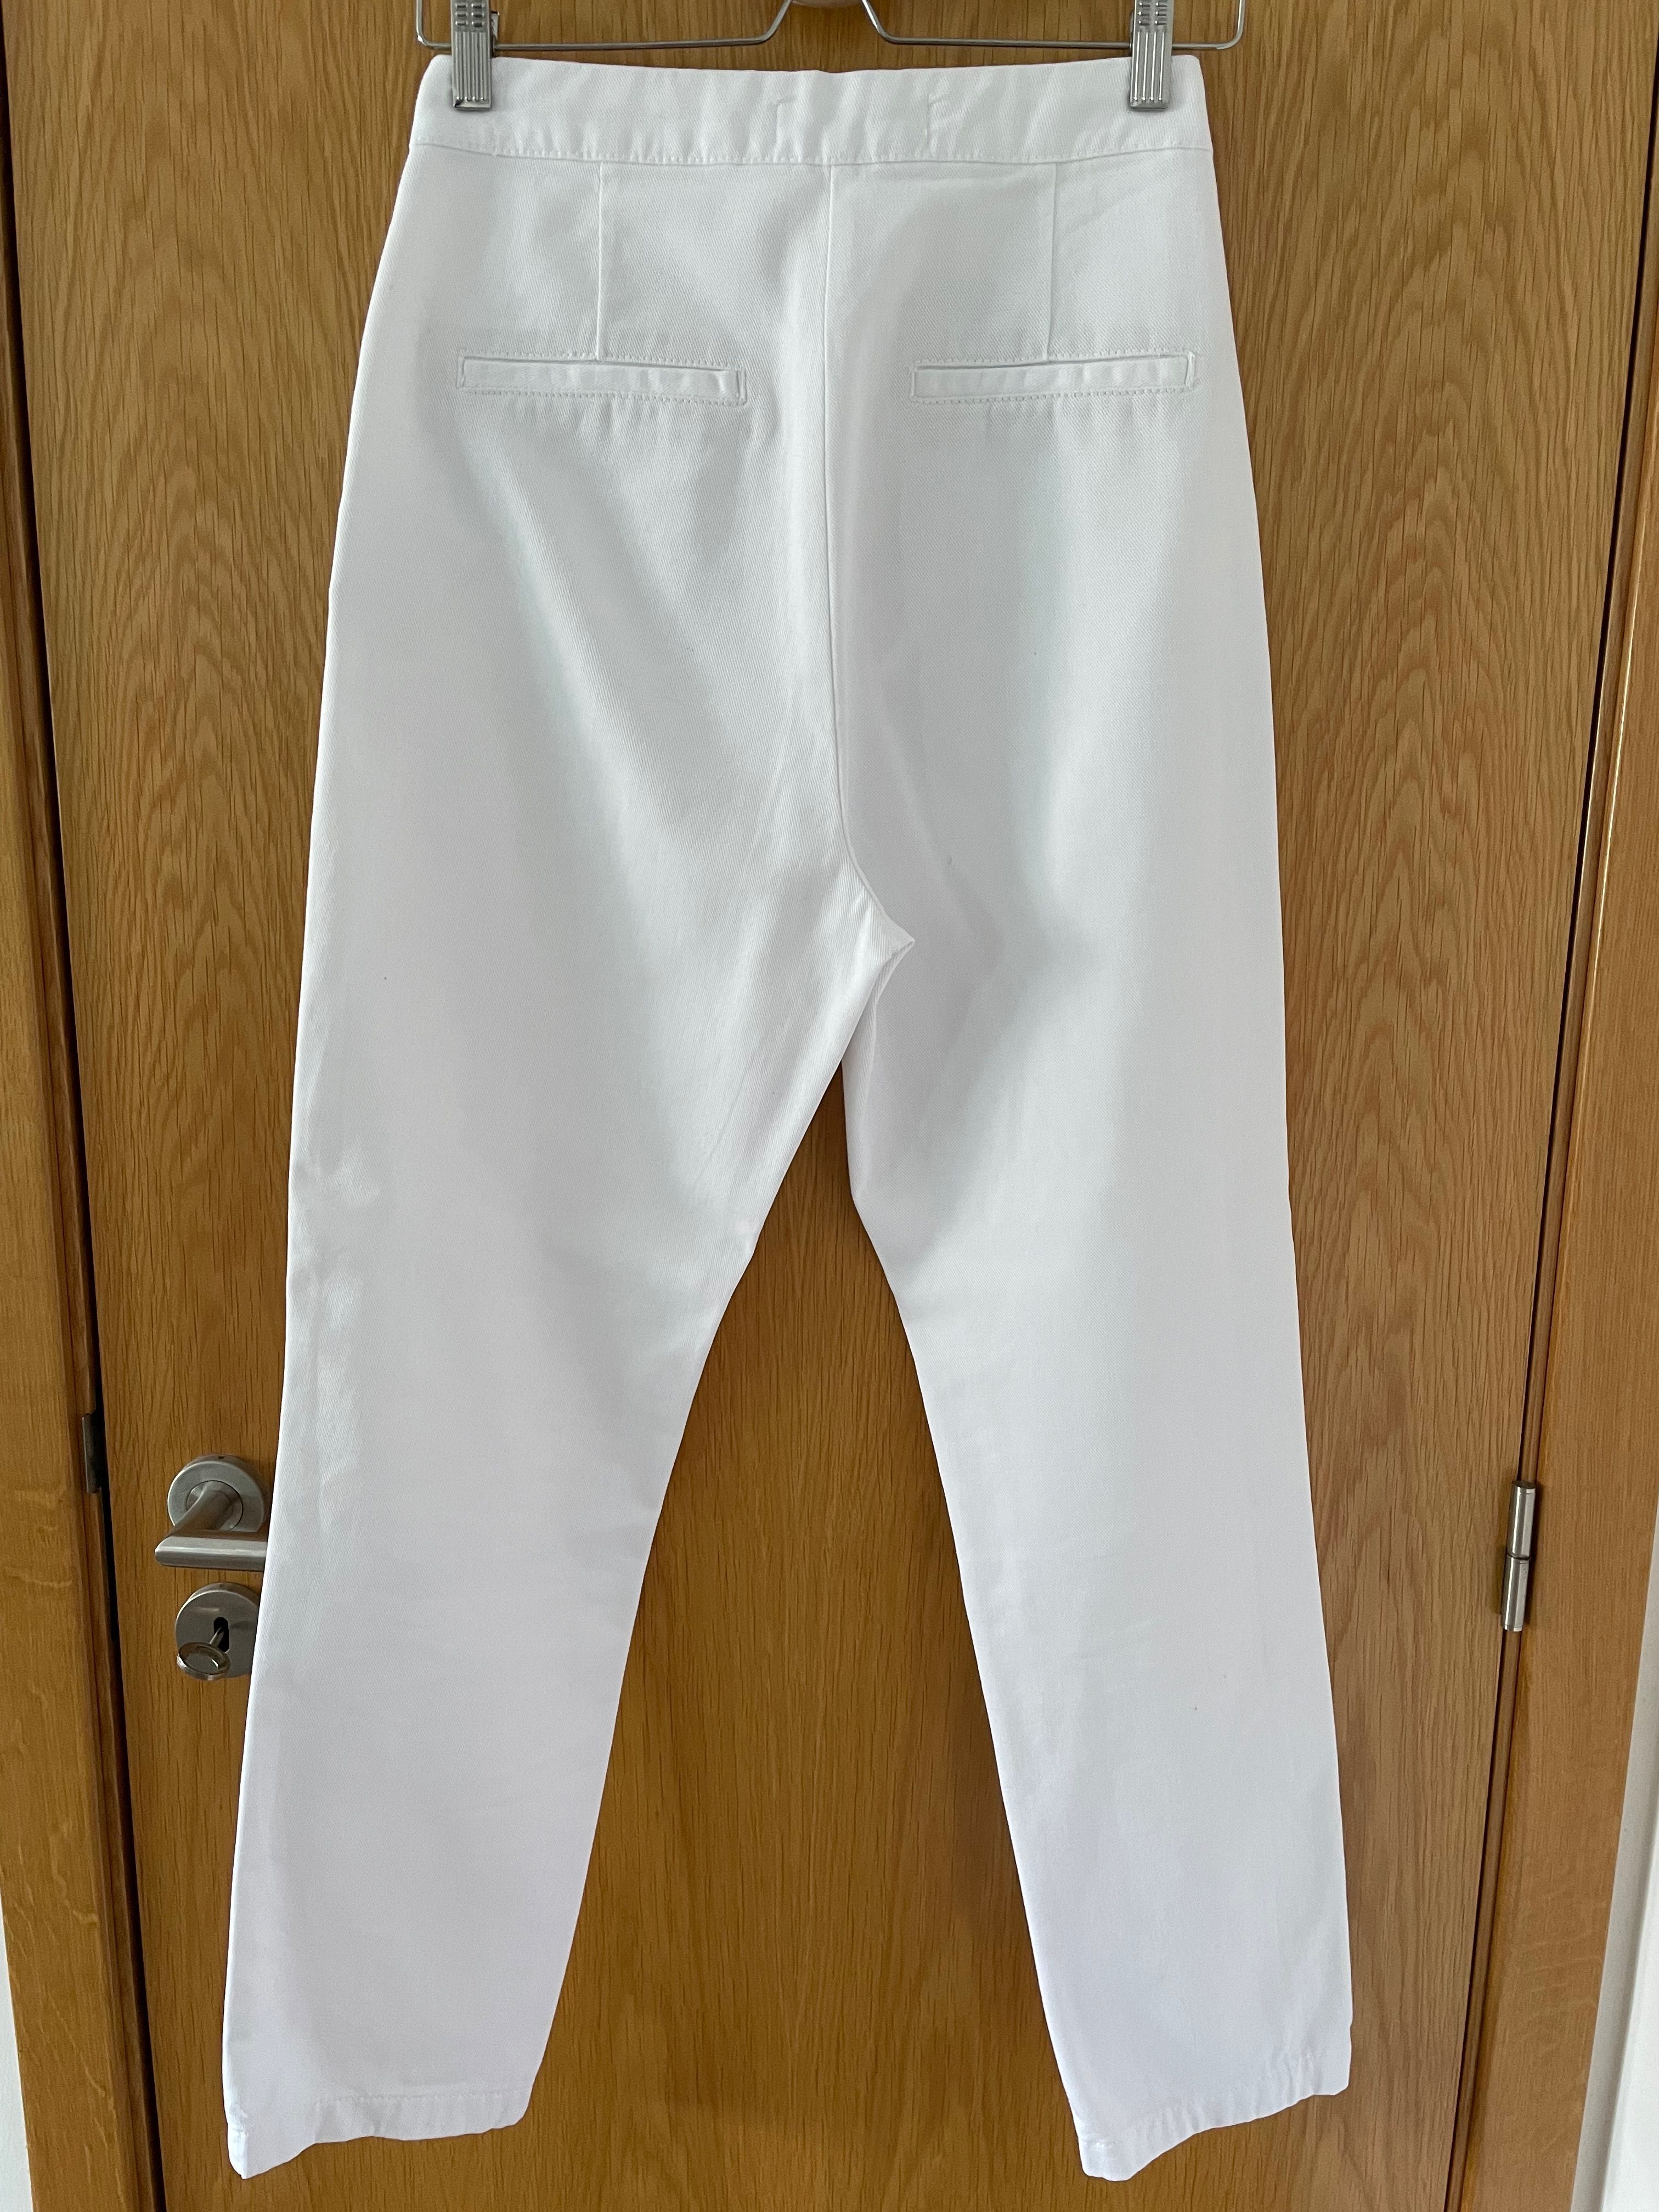 Calças brancas da Zara novas - tamanho S